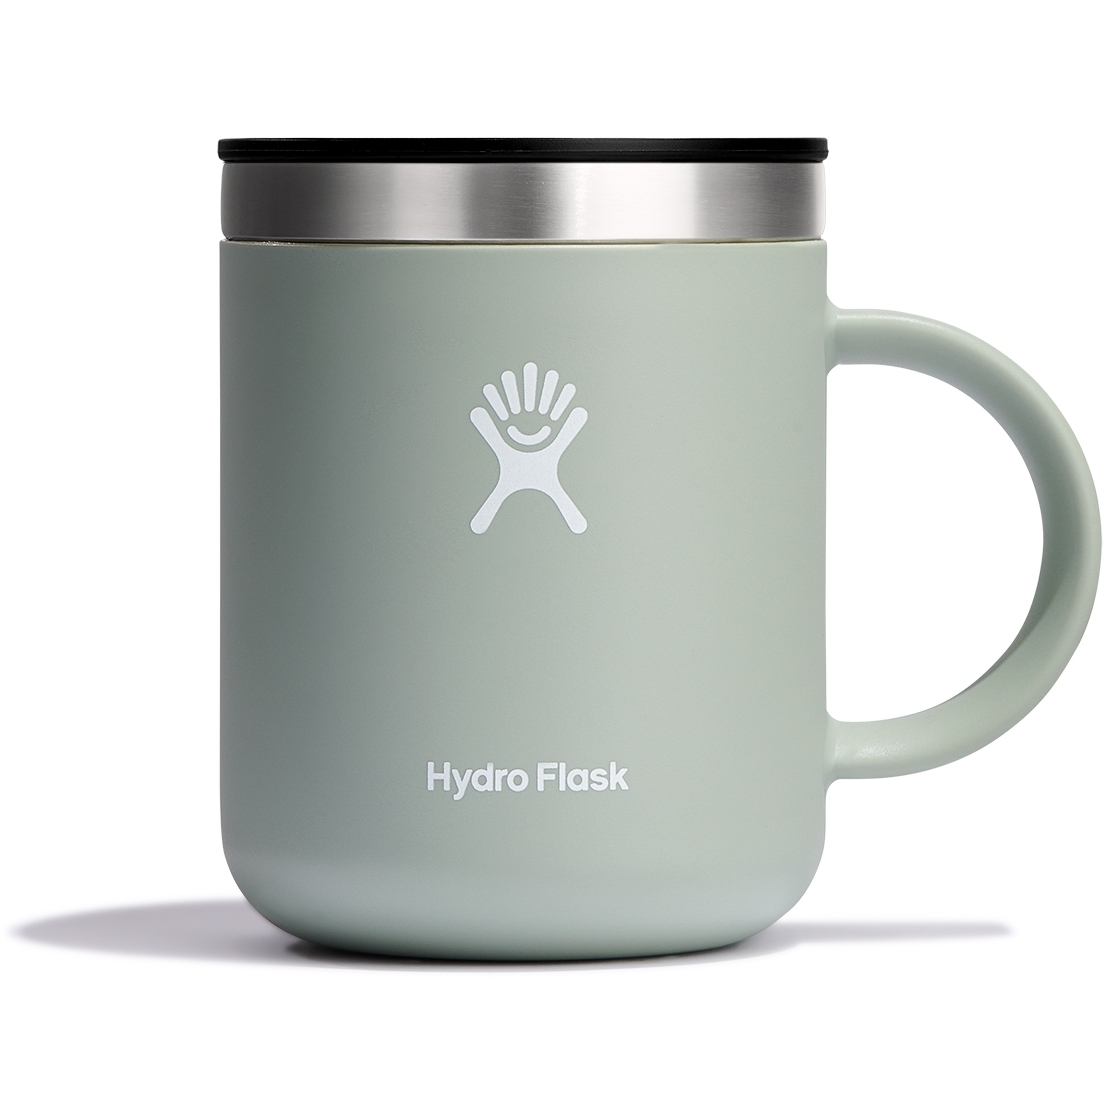 Hydro Flask Caffè Tazza Termica - 12 oz - 355ml - Agave - BIKE24